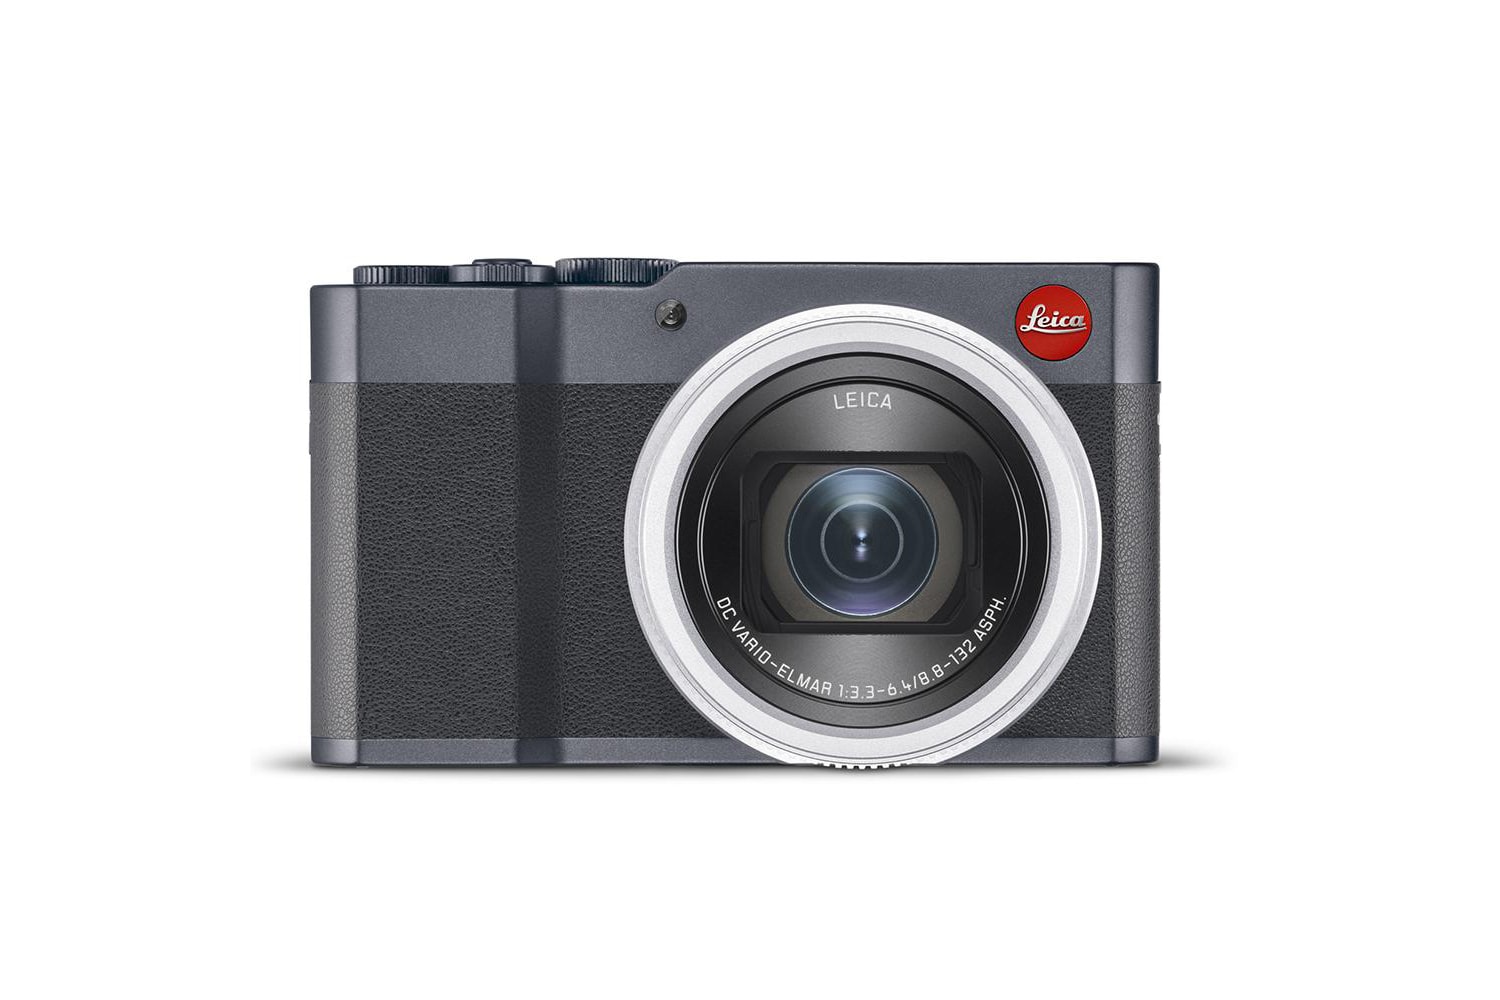 Leica が光学15倍ズームを搭載した最新コンパクトデジタルカメラ C-Lux を発表 ハイエンドな機能を備えたポケットサイズの高画質コンデジ 世界中の写真愛好家から熱い支持を集めるドイツの高級カメラメーカー「Leica（ライカ）」がコンパクトデジタルカメラの最新機種、C-Luxを発表した。  スピードと機能性にフォーカスした今モデルは、2000万画素の1型センサー、15倍の光学ズーム、4K動画撮影、タッチパネル式液晶モニターなどの高性能さが売りである。またWi-Fi/Bluetoothにも対応しているので、JPEGもしくはRAW形式で保存された画像を即座にスマートフォンに転送することも可能。ボディはライトゴールドとミッドナイトブルーの2色がラインアップされる。発売時期は7月を予定しており、価格は1050ドル（約11万5000円）となる模様だ。